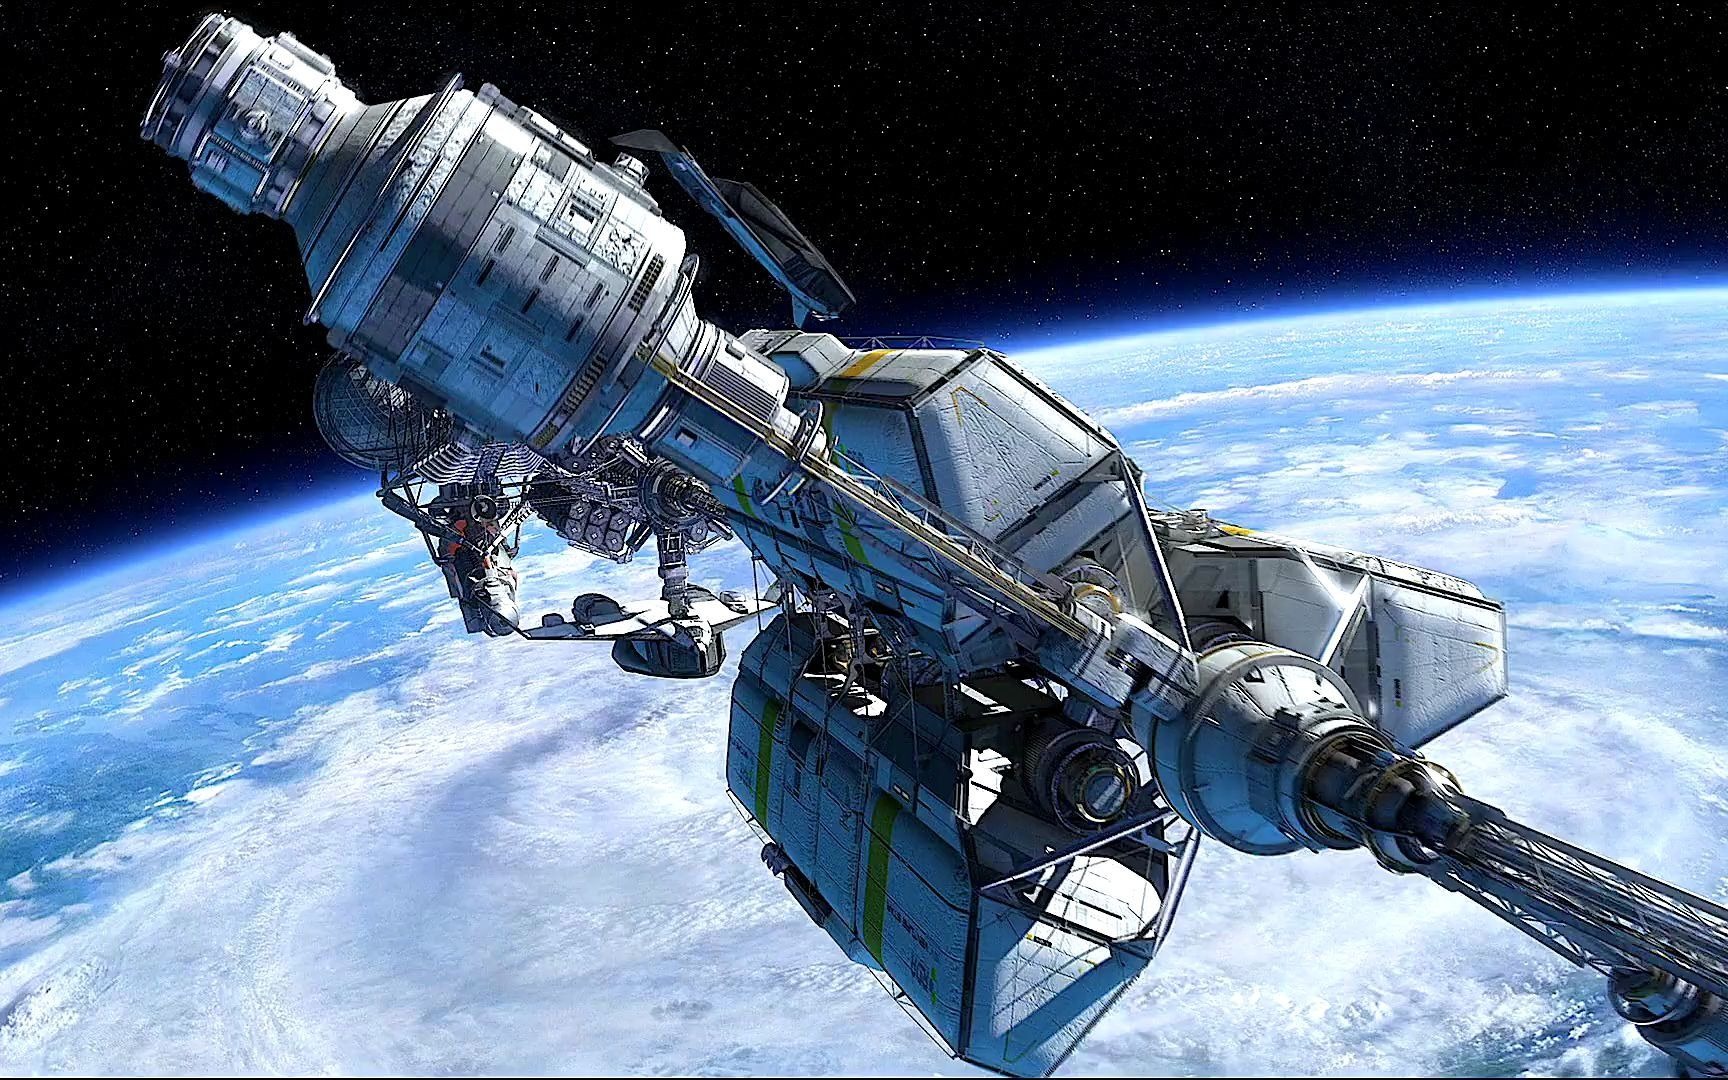 科幻电影中那些豪华的宇宙飞船你认为有可能实现吗?